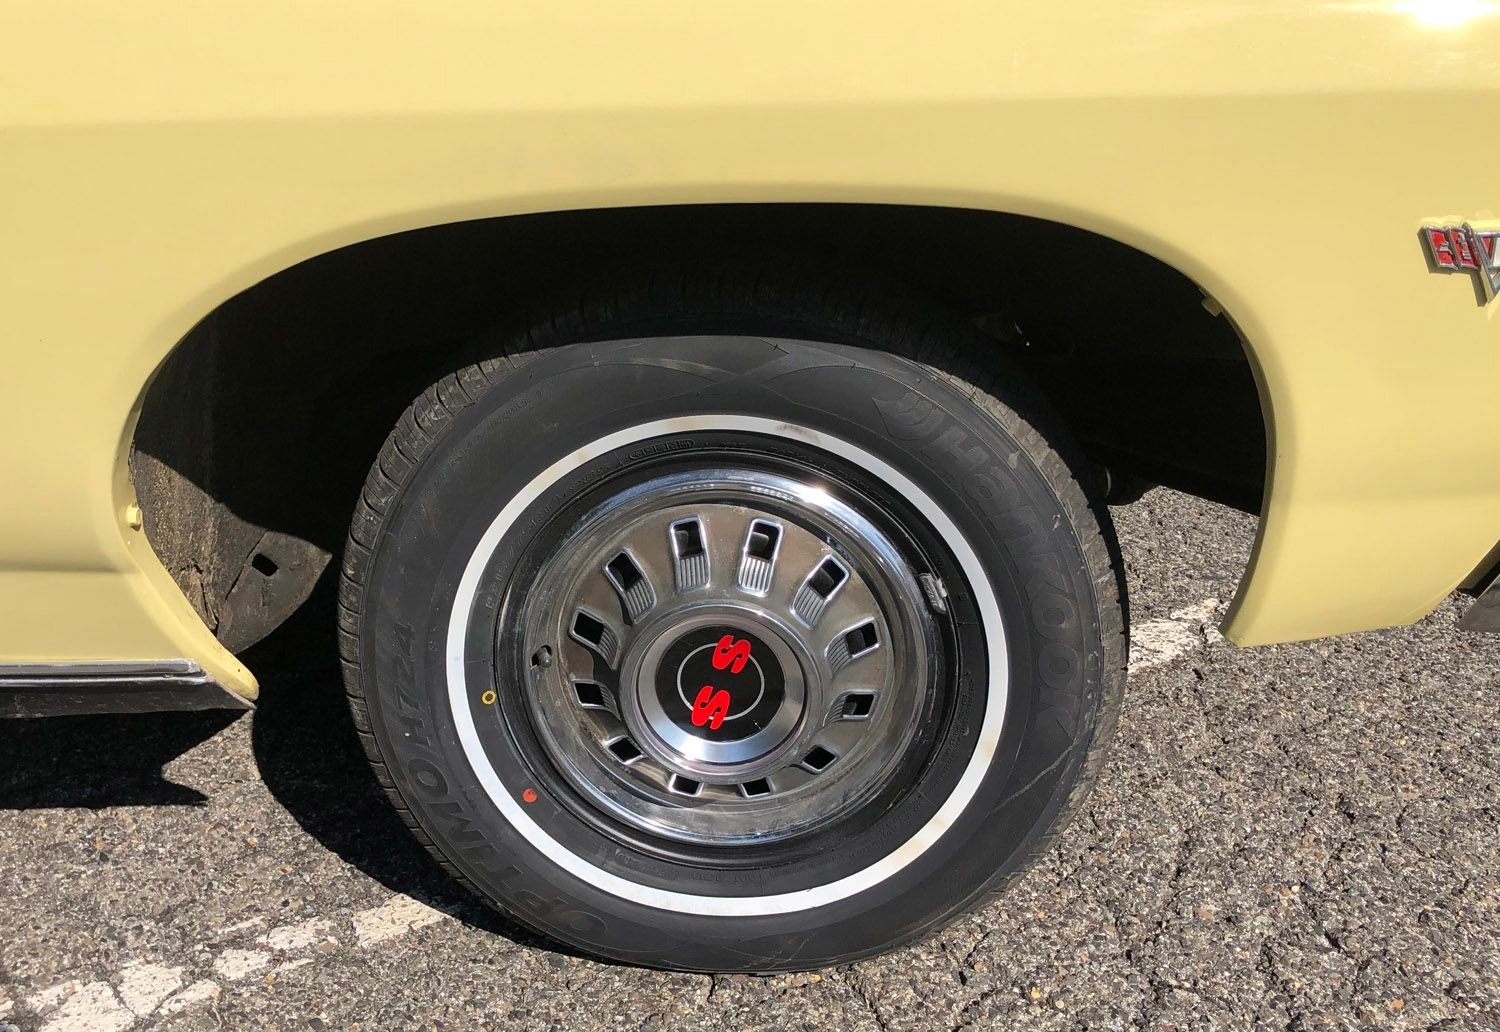 1967 Chevrolet Impala